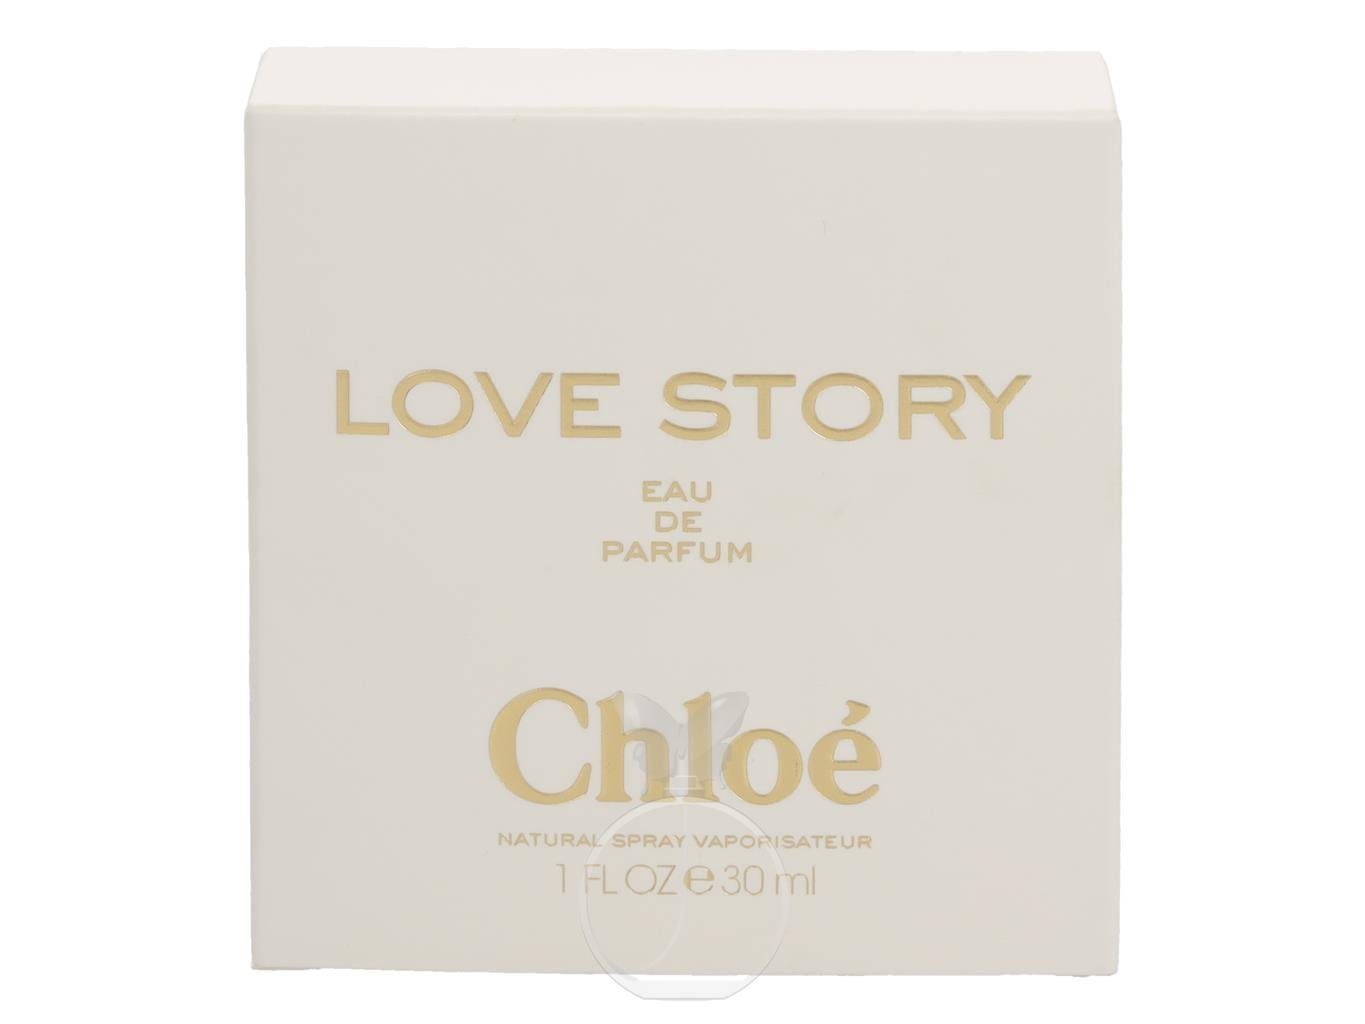 Parfum Chloe Eau Story de de Love Chloé 30 Eau ml, 1-tlg. Parfum